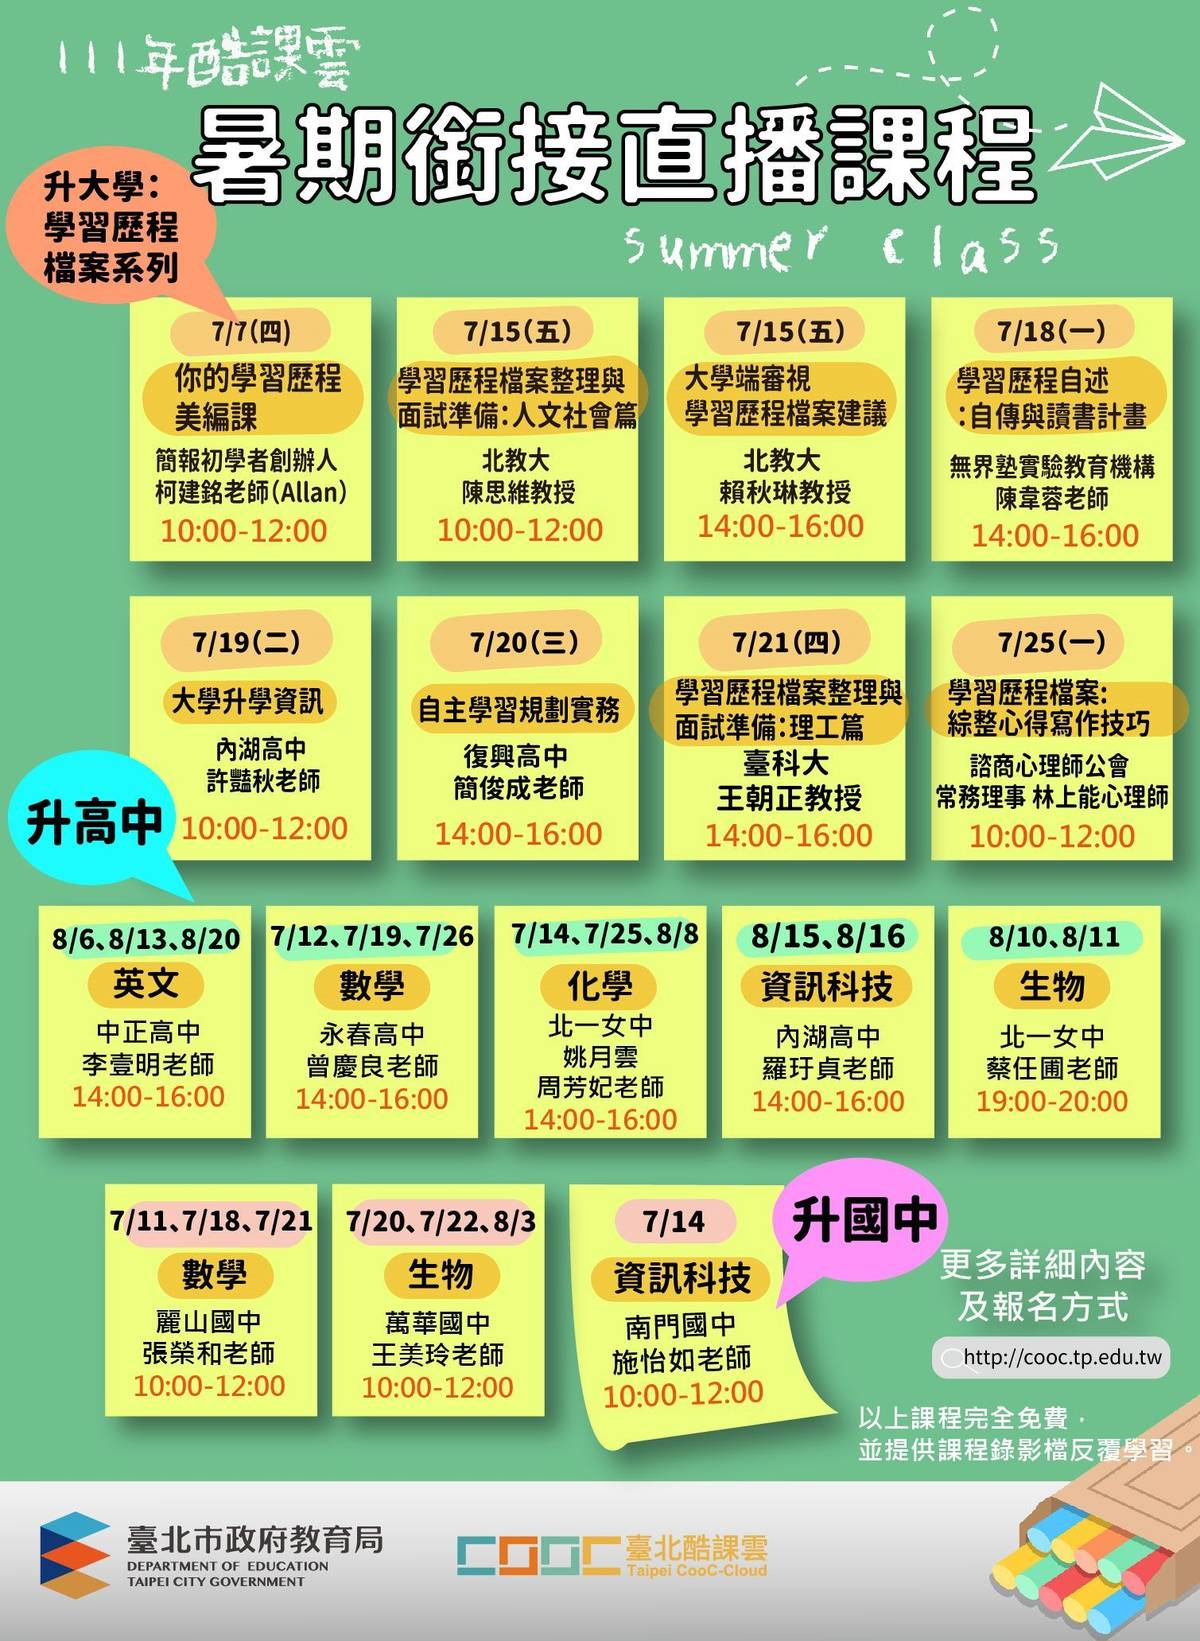 臺北酷課雲推出「暑期數位銜接直播課程」